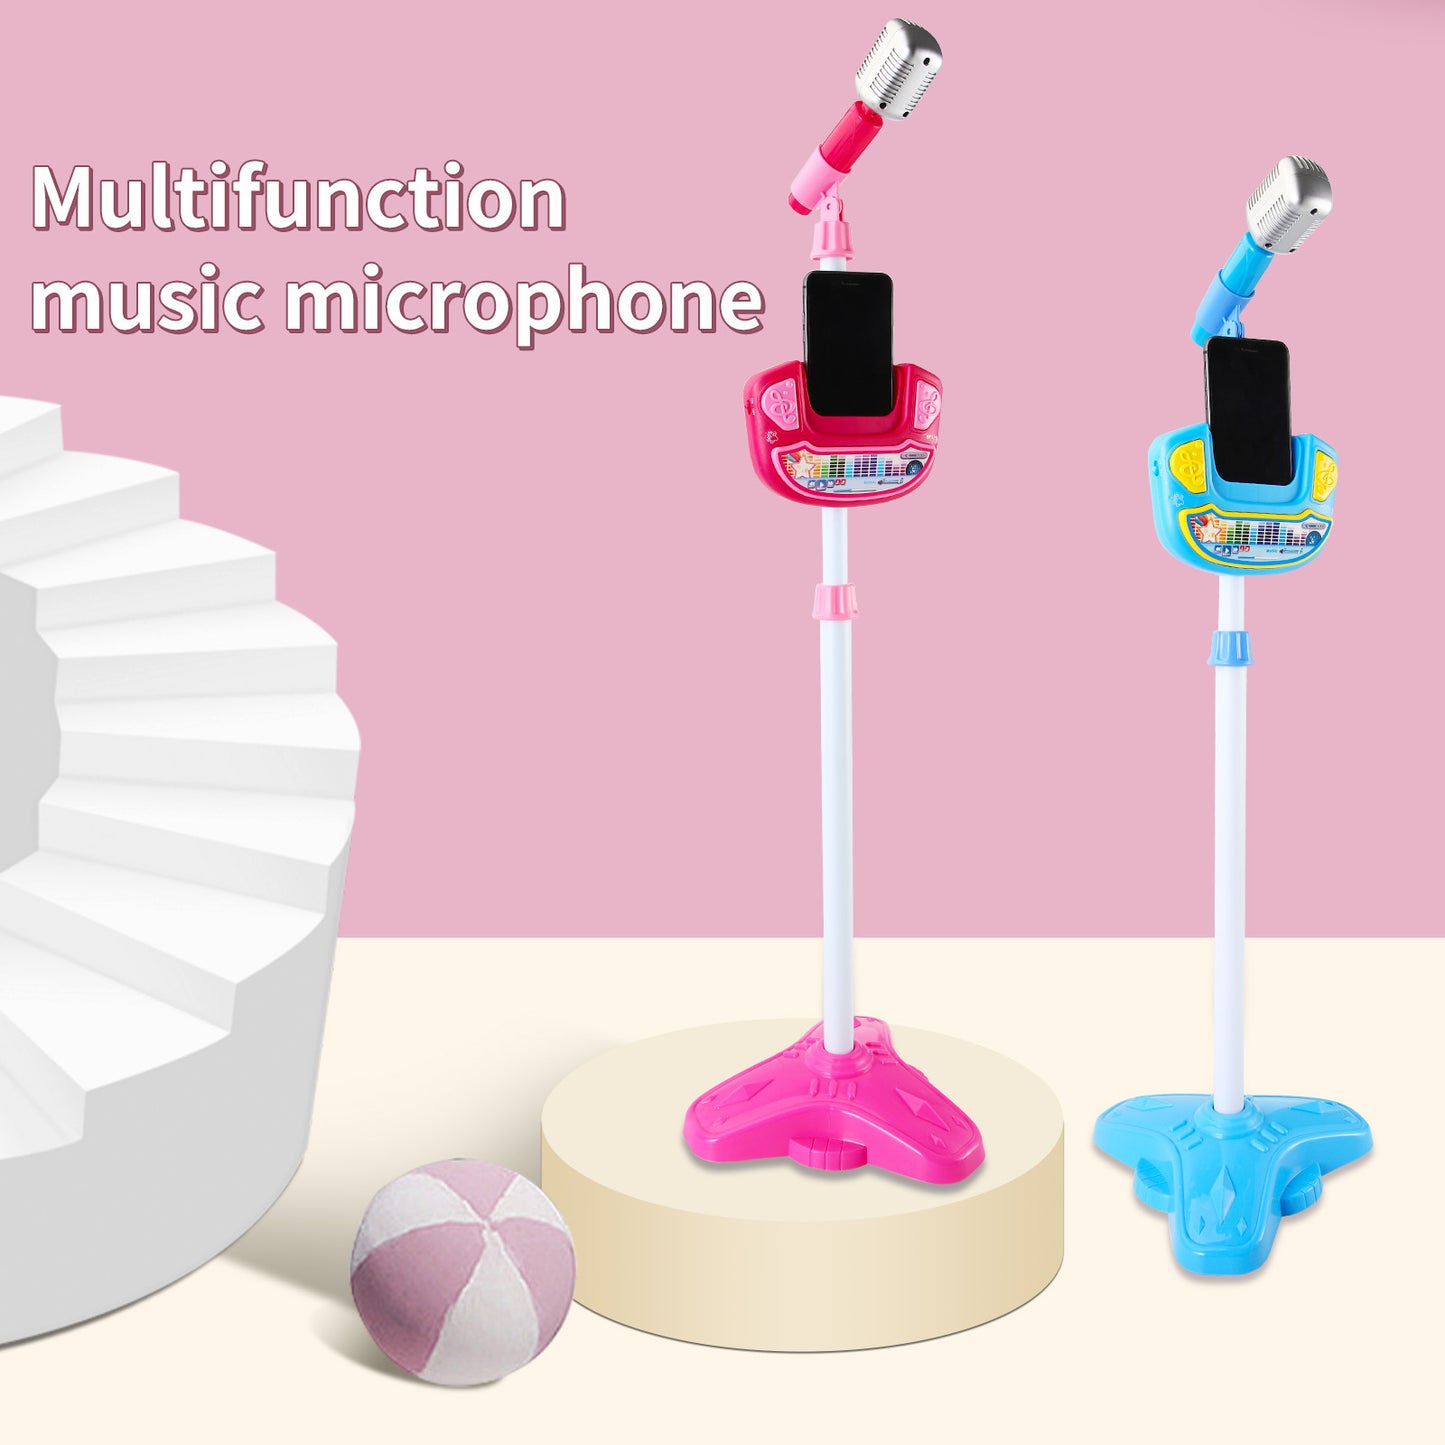 Micrófono de música multifuncional, reproductor de micrófono, juguetes de fiesta para niños, regalos de cumpleaños para niños 